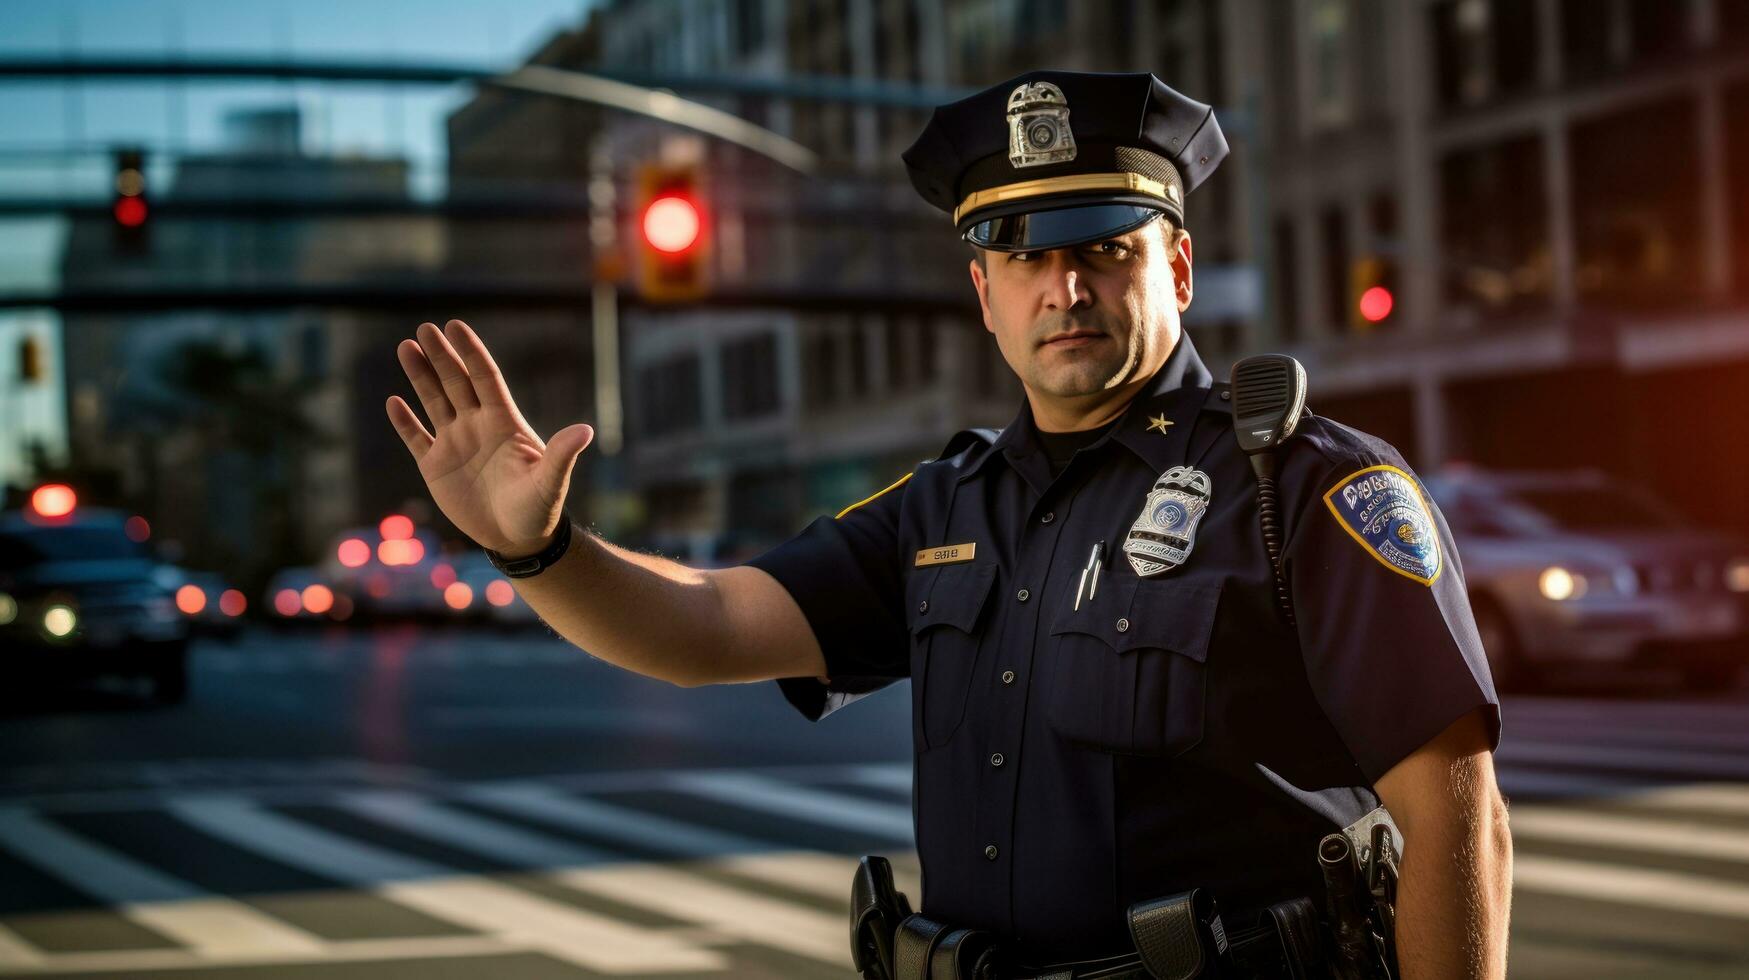 Politie officier Aan de straat foto